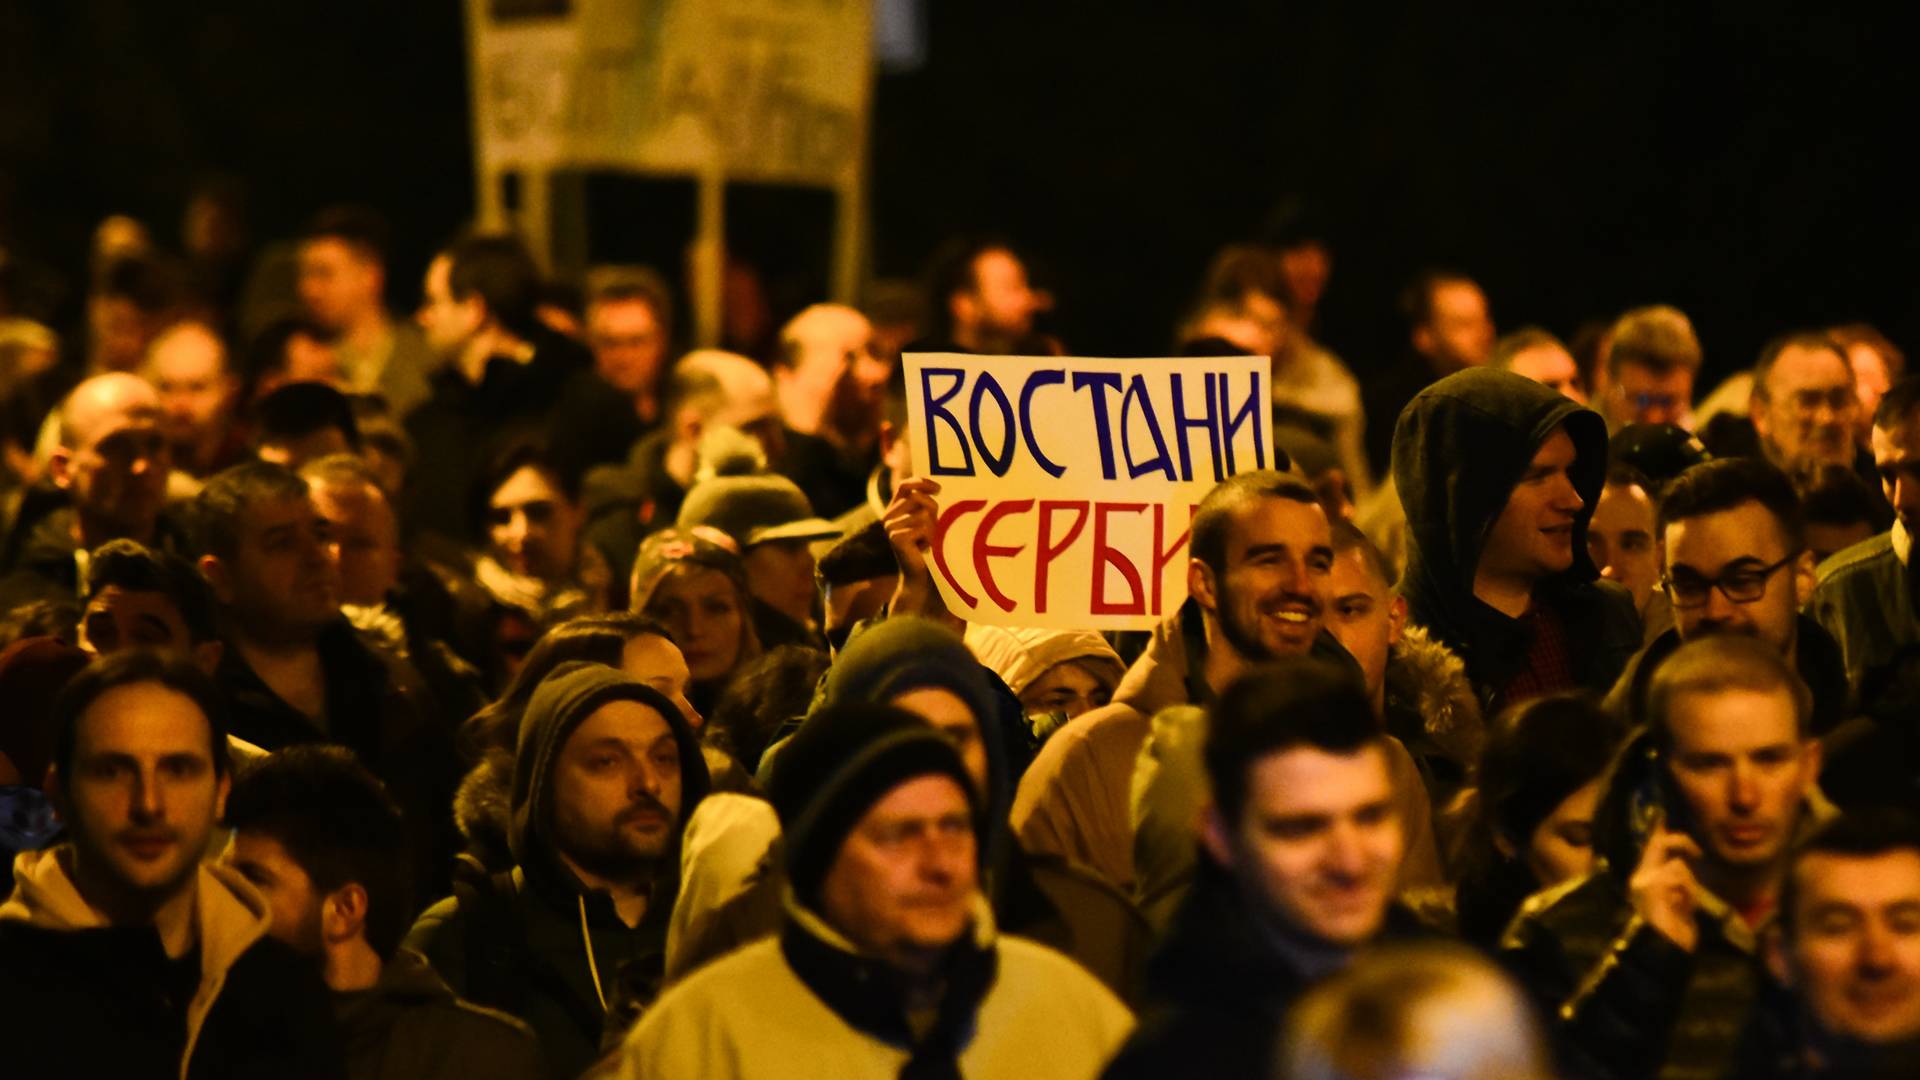 Novosadski protest uz pesmu "Pukni zoro" je verovatno najbolji protest do sad